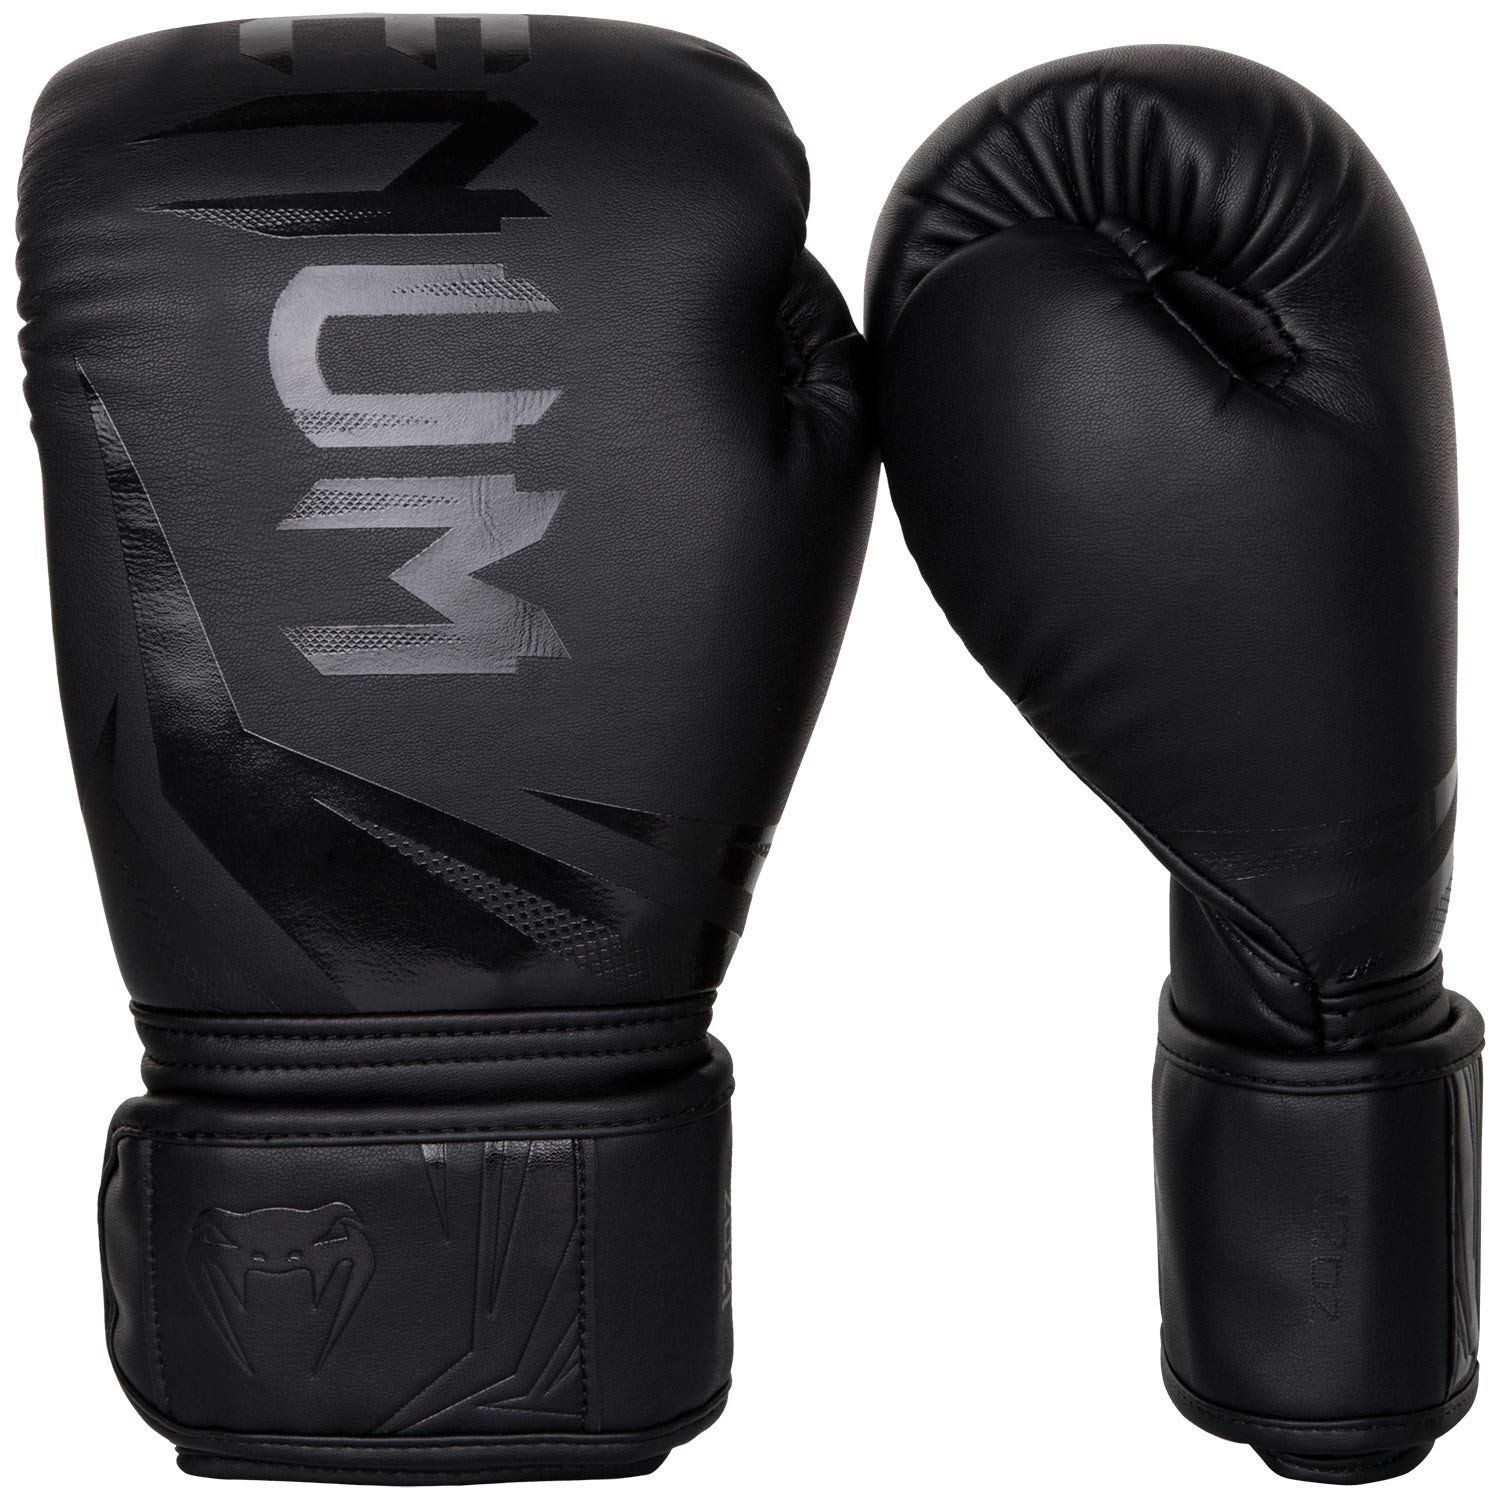 Boxerské rukavice Challenger 3.0 černé VENUM vel. 16 oz